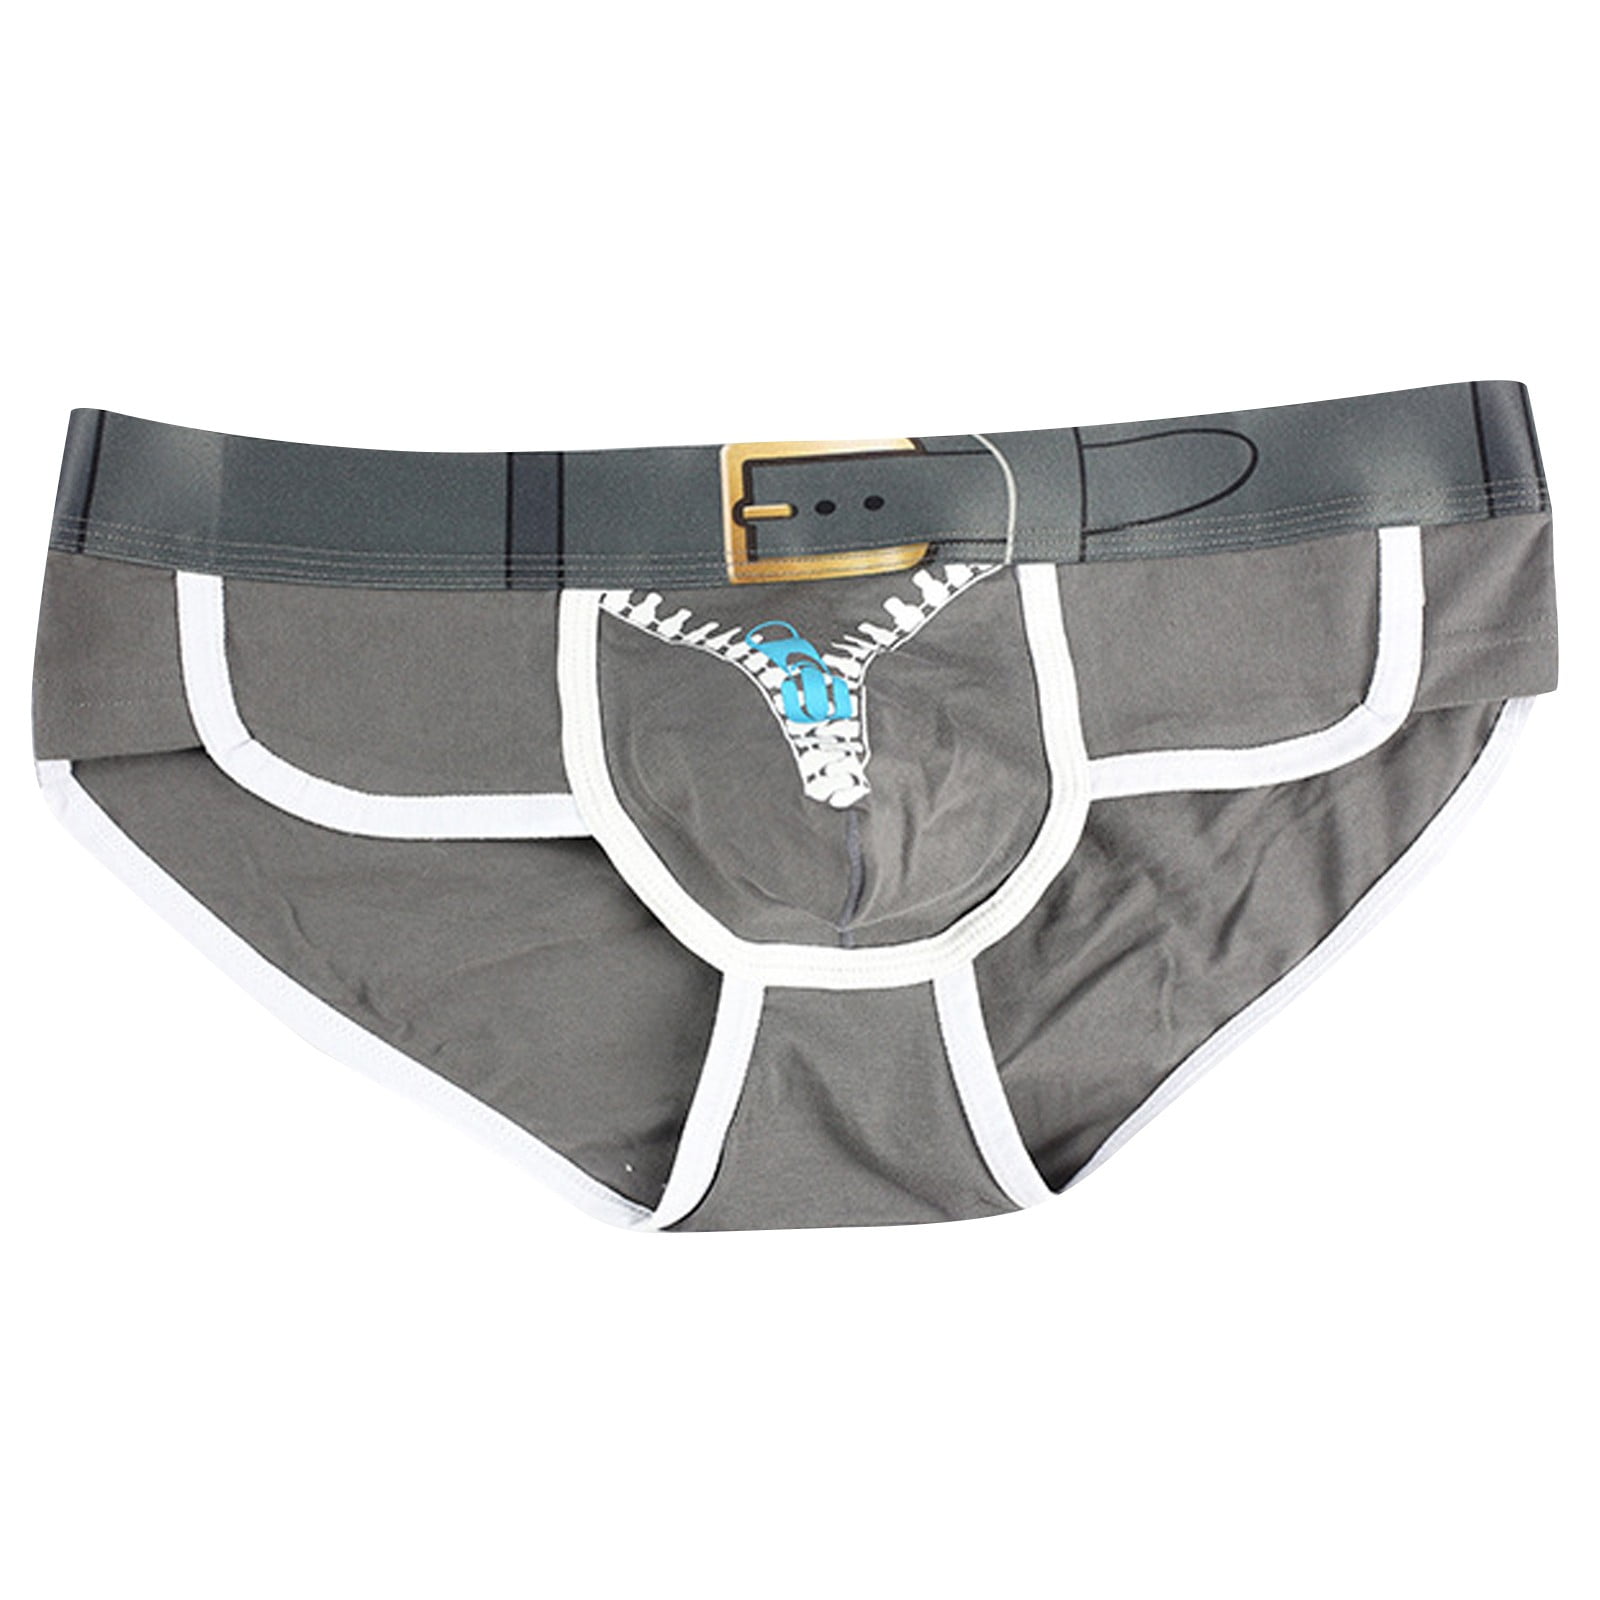 Official Mens San Diego Padres Underwear, Lingerie, Padres Mens Boxers,  Panties, Thongs, Bras